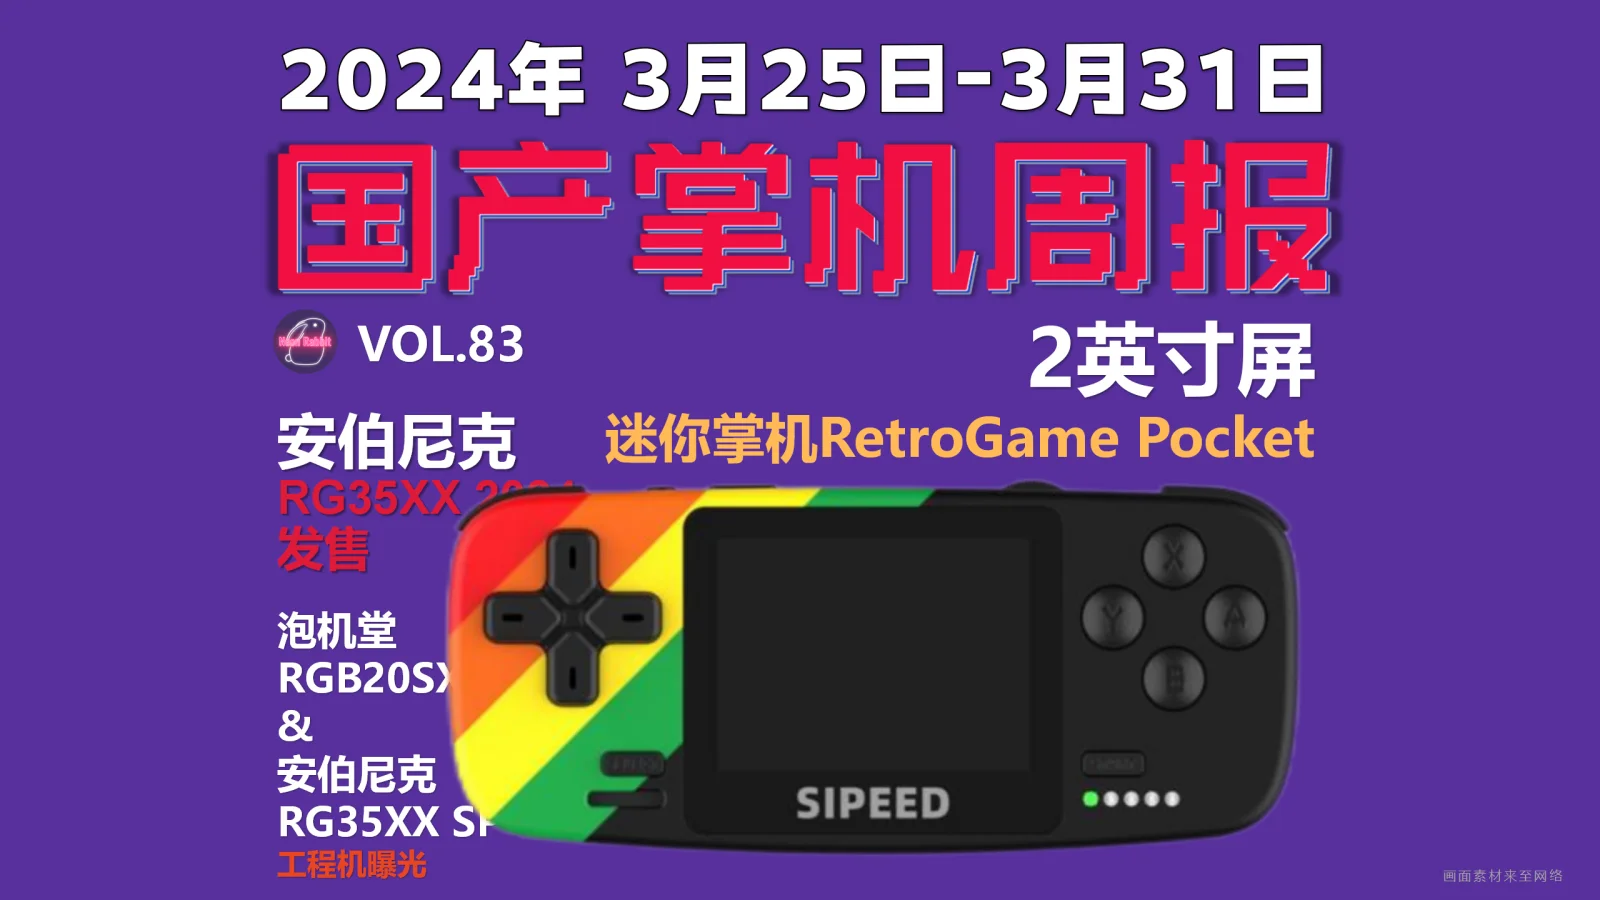 2寸屏迷你掌机，RetroGame Pocket - 国产游戏掌机周报 NO.83